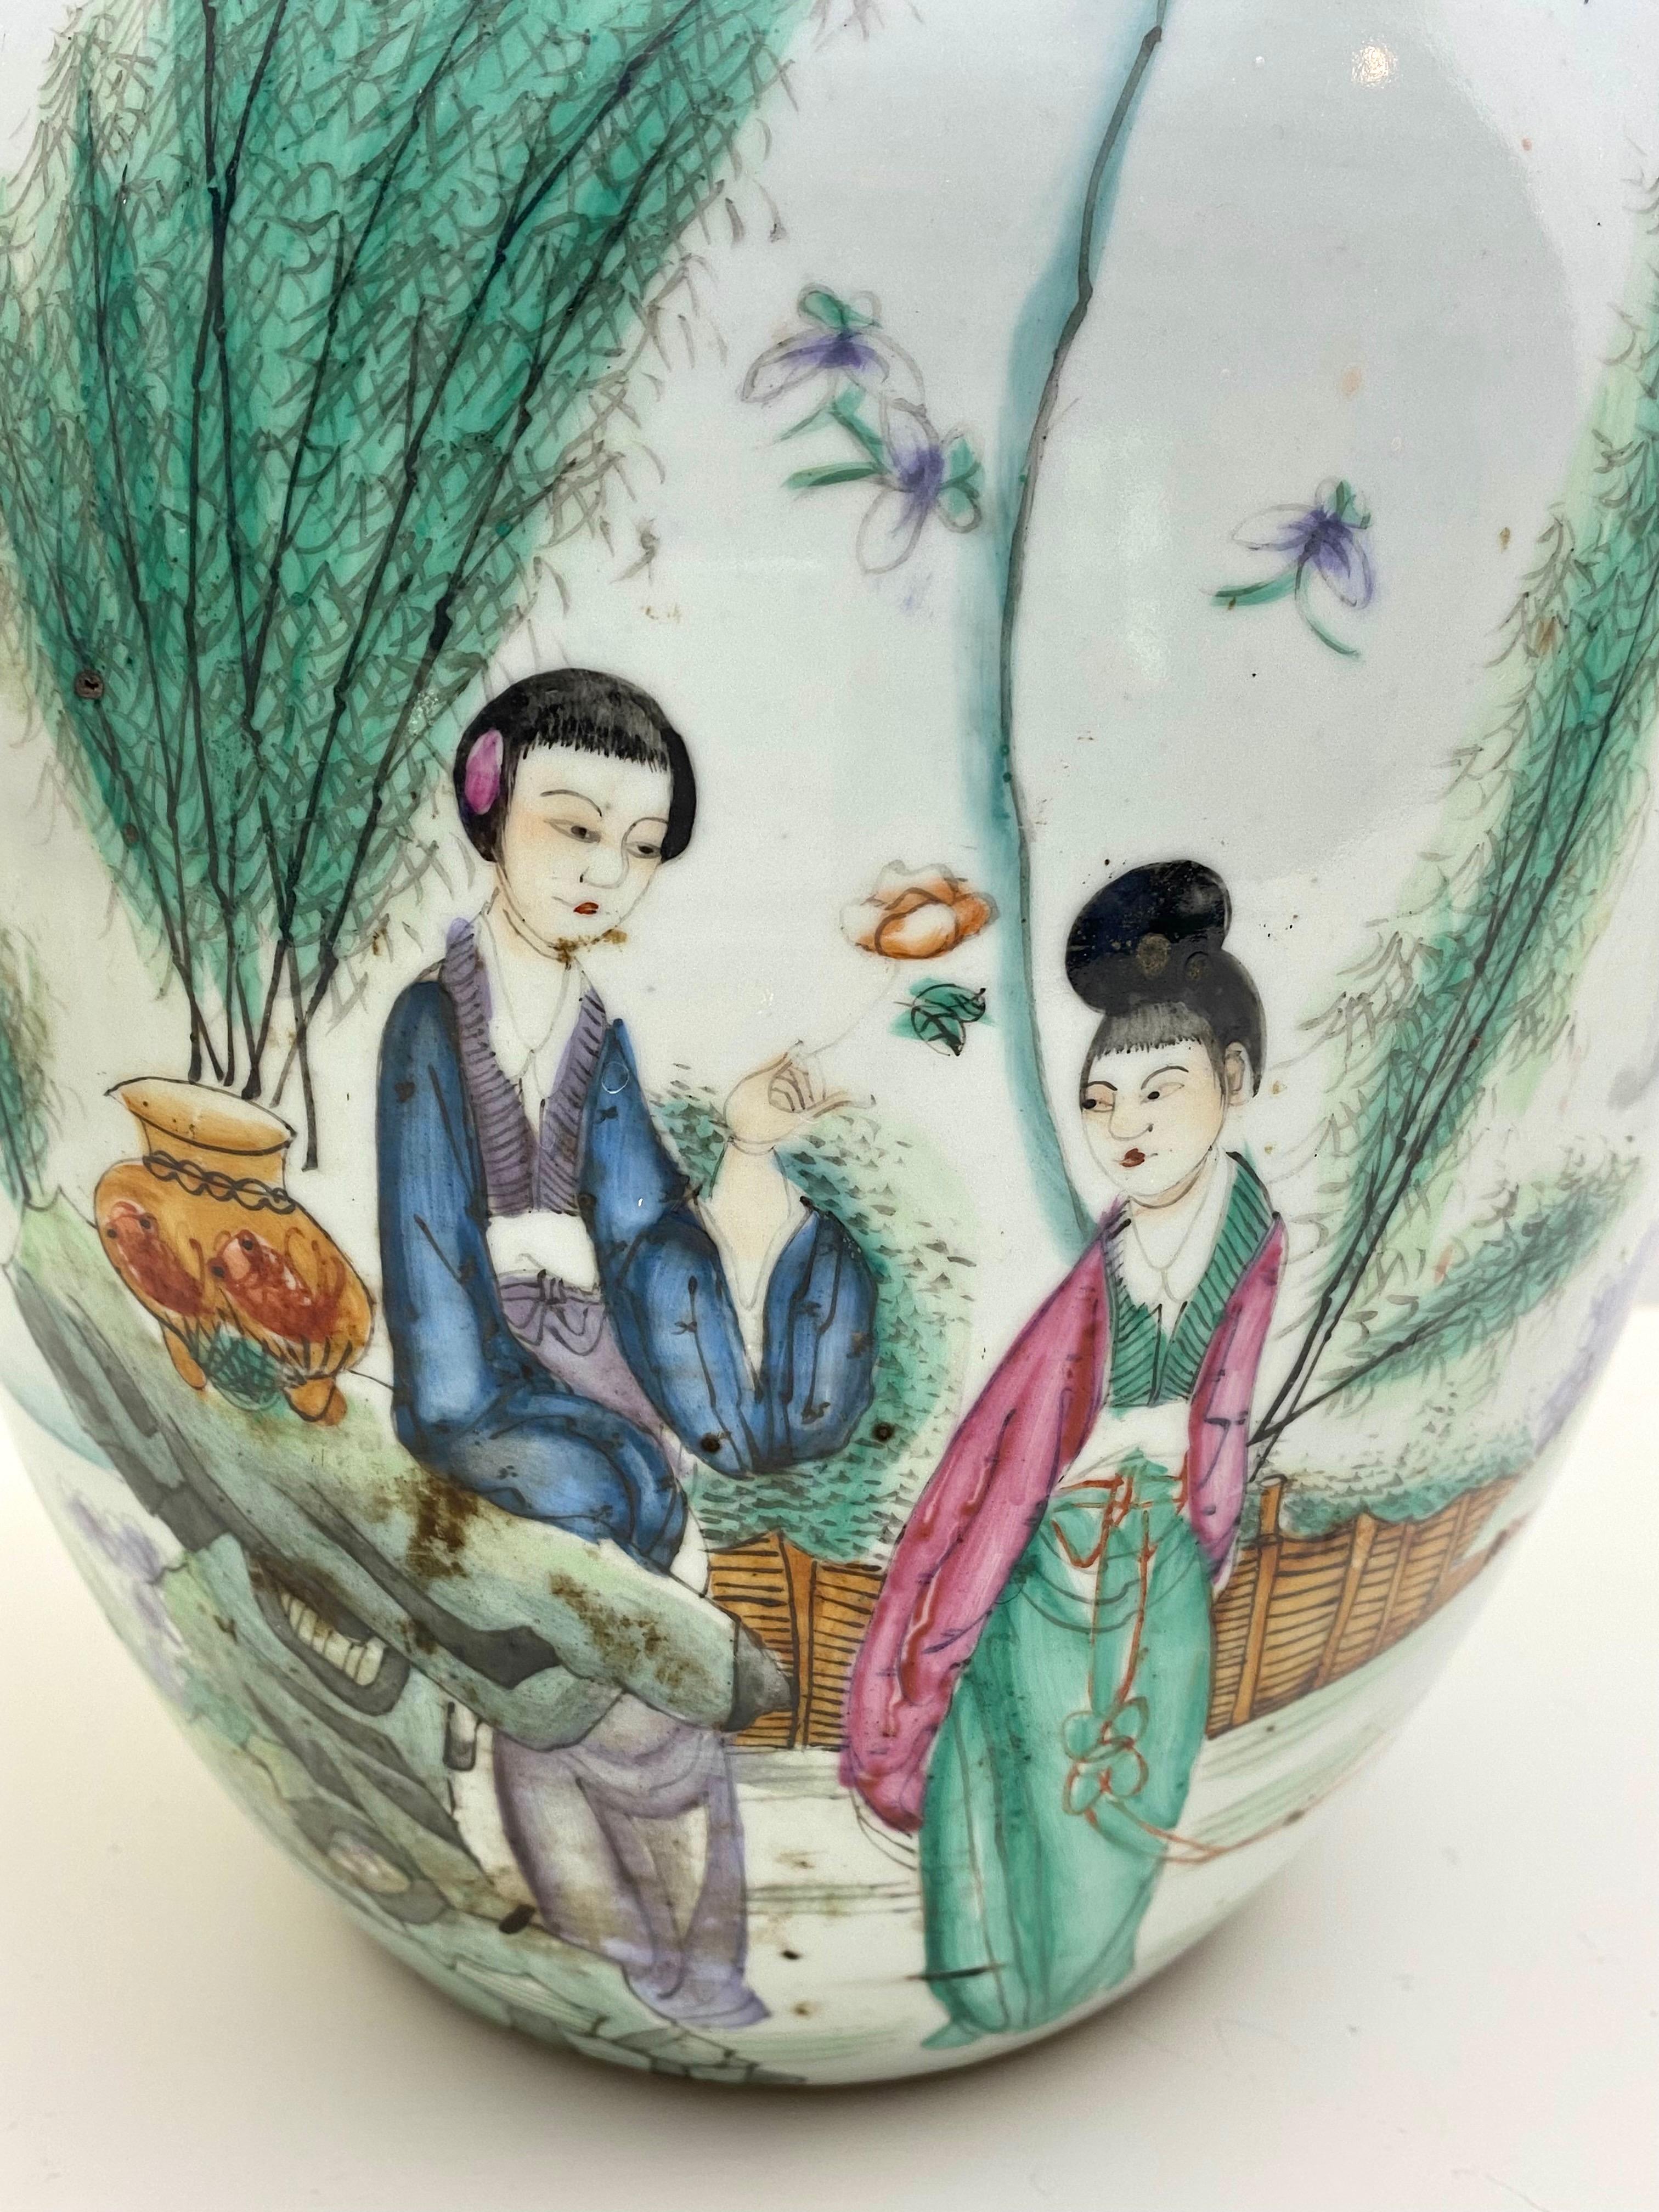 Schöne große chinesische Republik Porzellan-Vase oder Ingwer-Glas Hand gemalt und zugeschrieben ??? Zeng Dingtai, ein Künstler des frühen 20. Jahrhunderts. Diese Vase hat eine atemberaubende Farbpalette und ein schönes, subtiles Design, das zwei